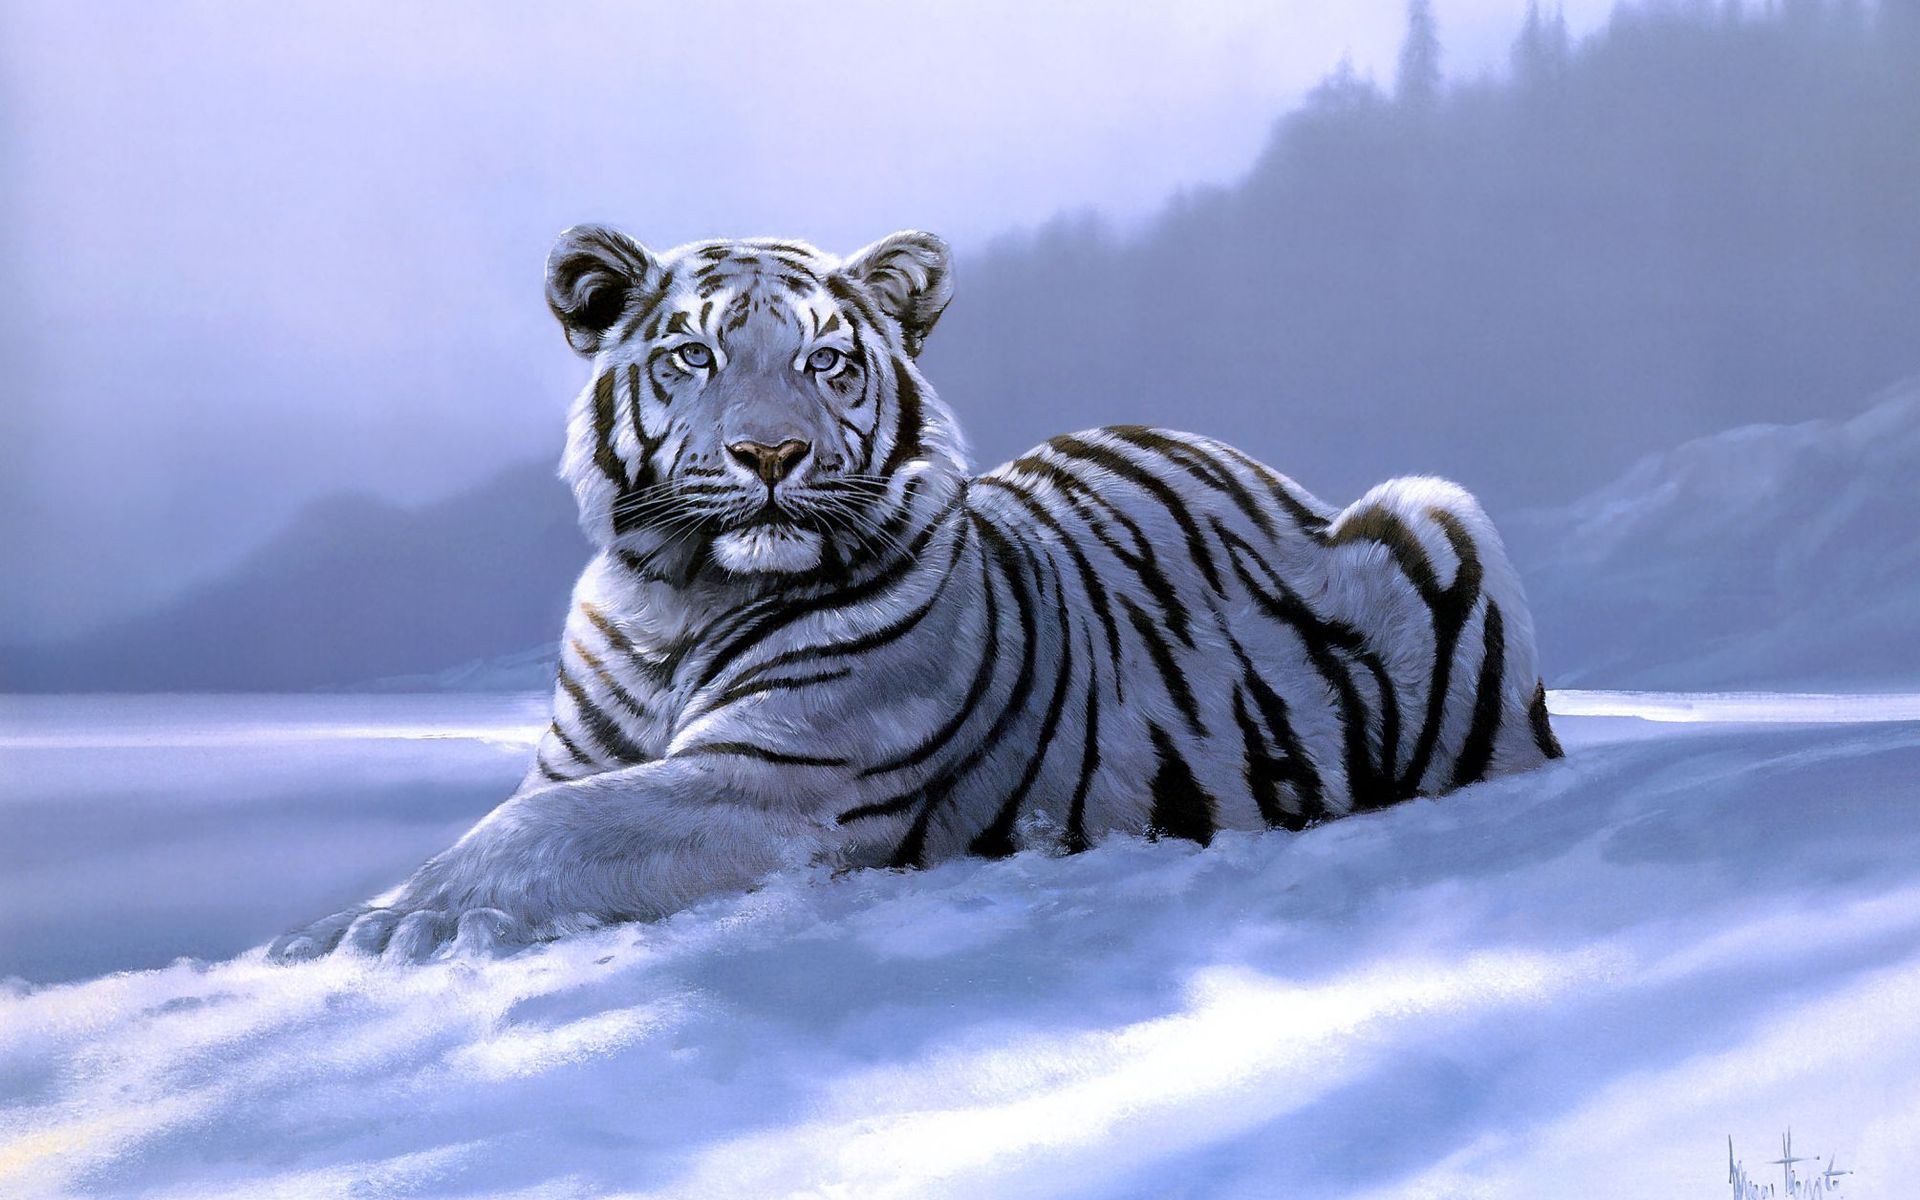 虎のhdの壁紙,虎,ベンガルトラ,シベリアンタイガー,野生動物,ネコ科